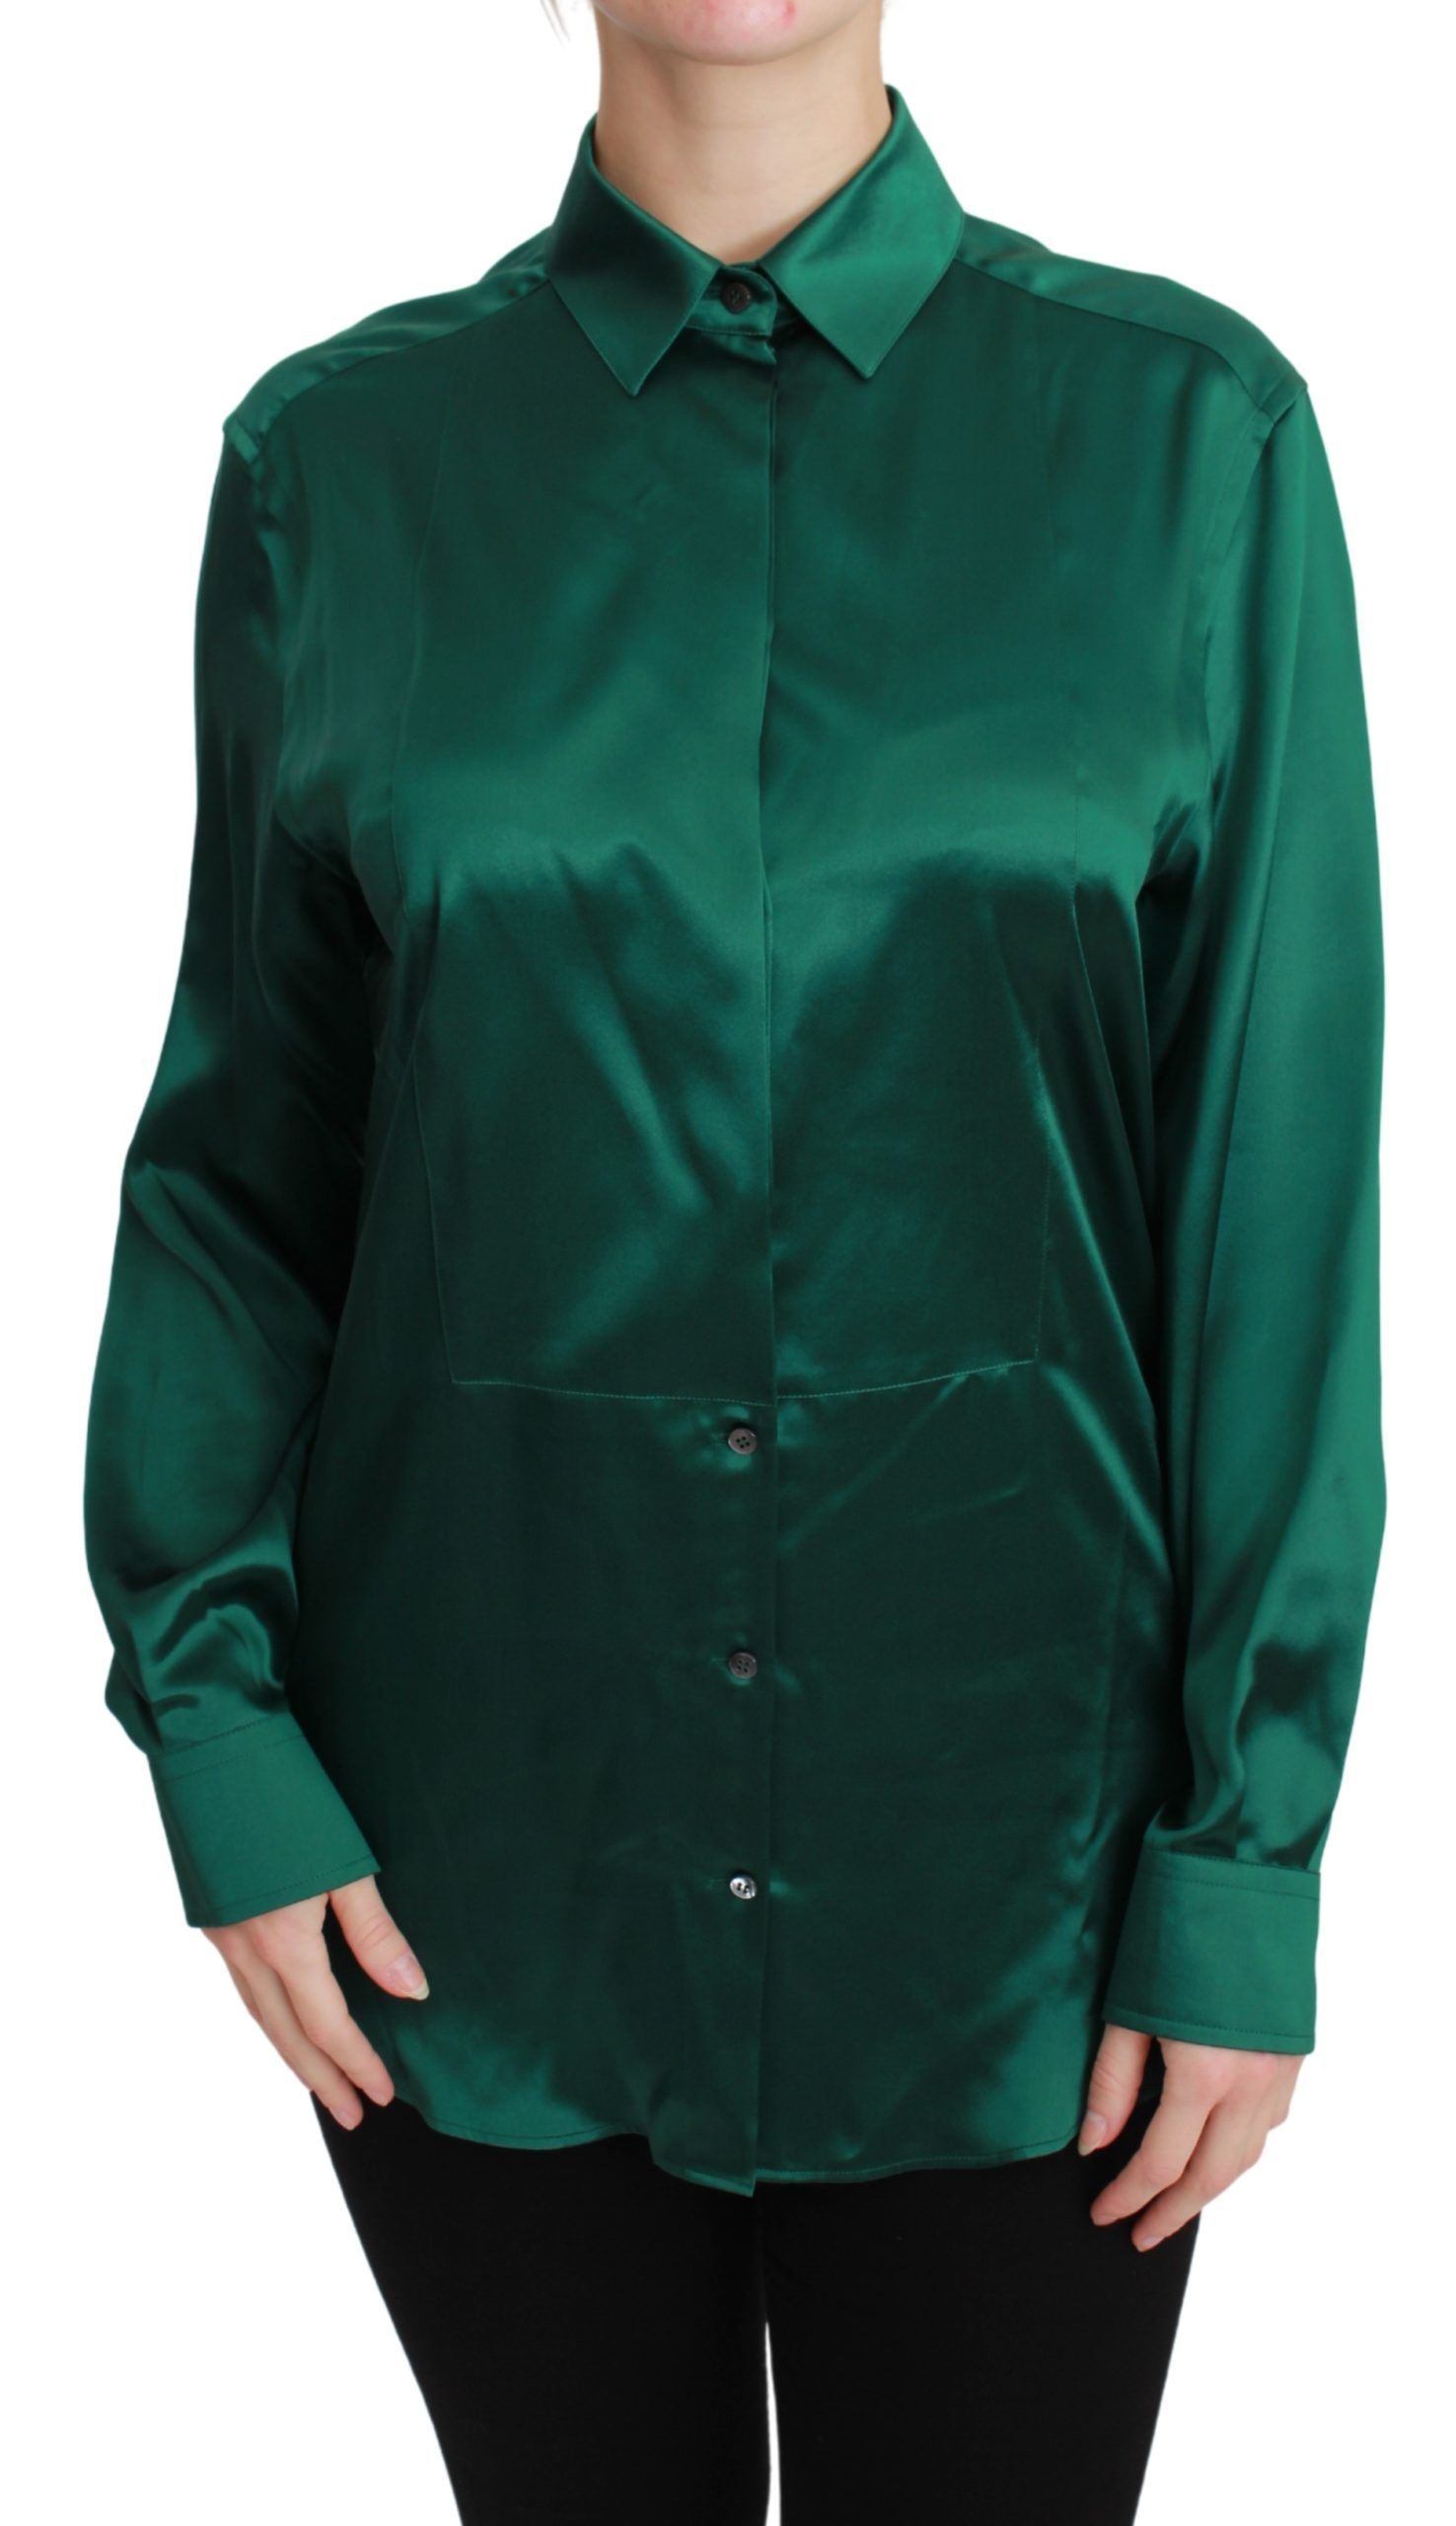 Dolce & Gabbana Women's Collared Shirt Green TSH2678 - IT40|S